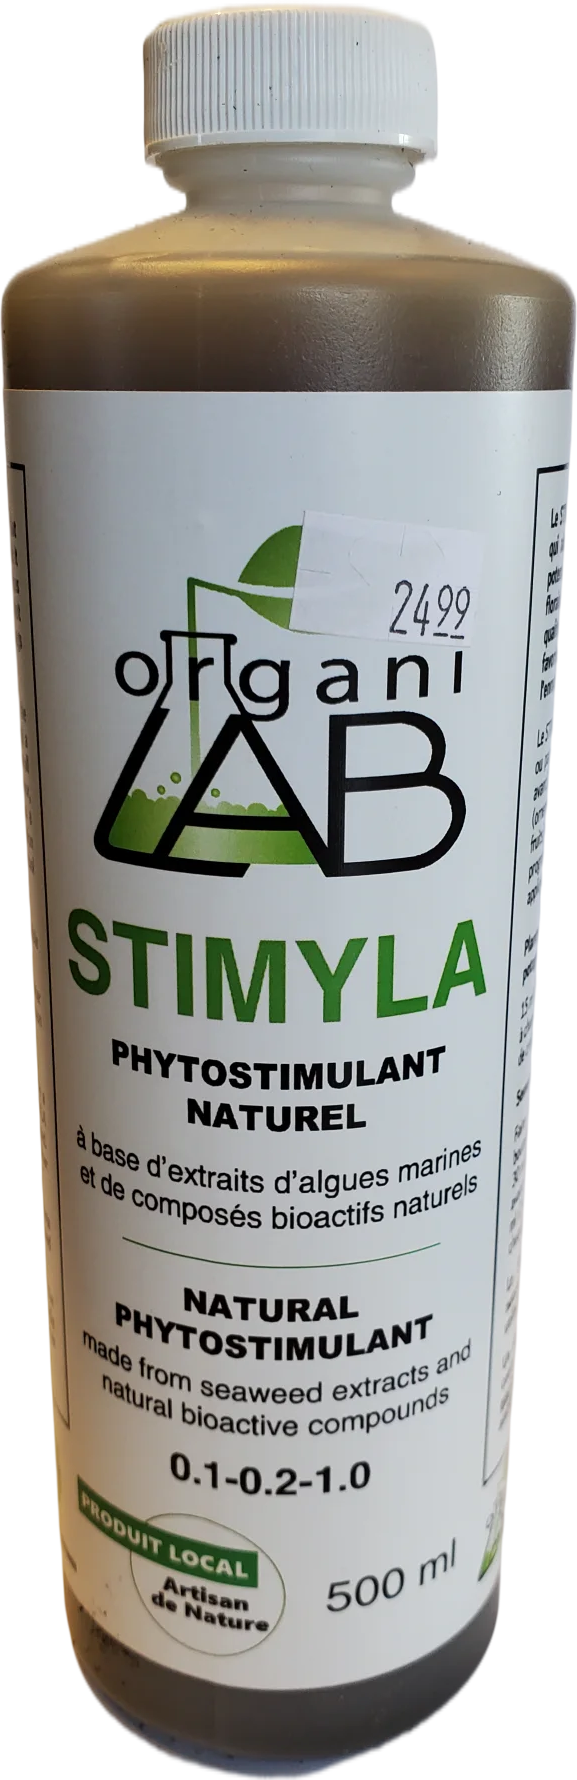 Natural Phytostimulant Fertilizer Stimyla 501Ml Fertilizer